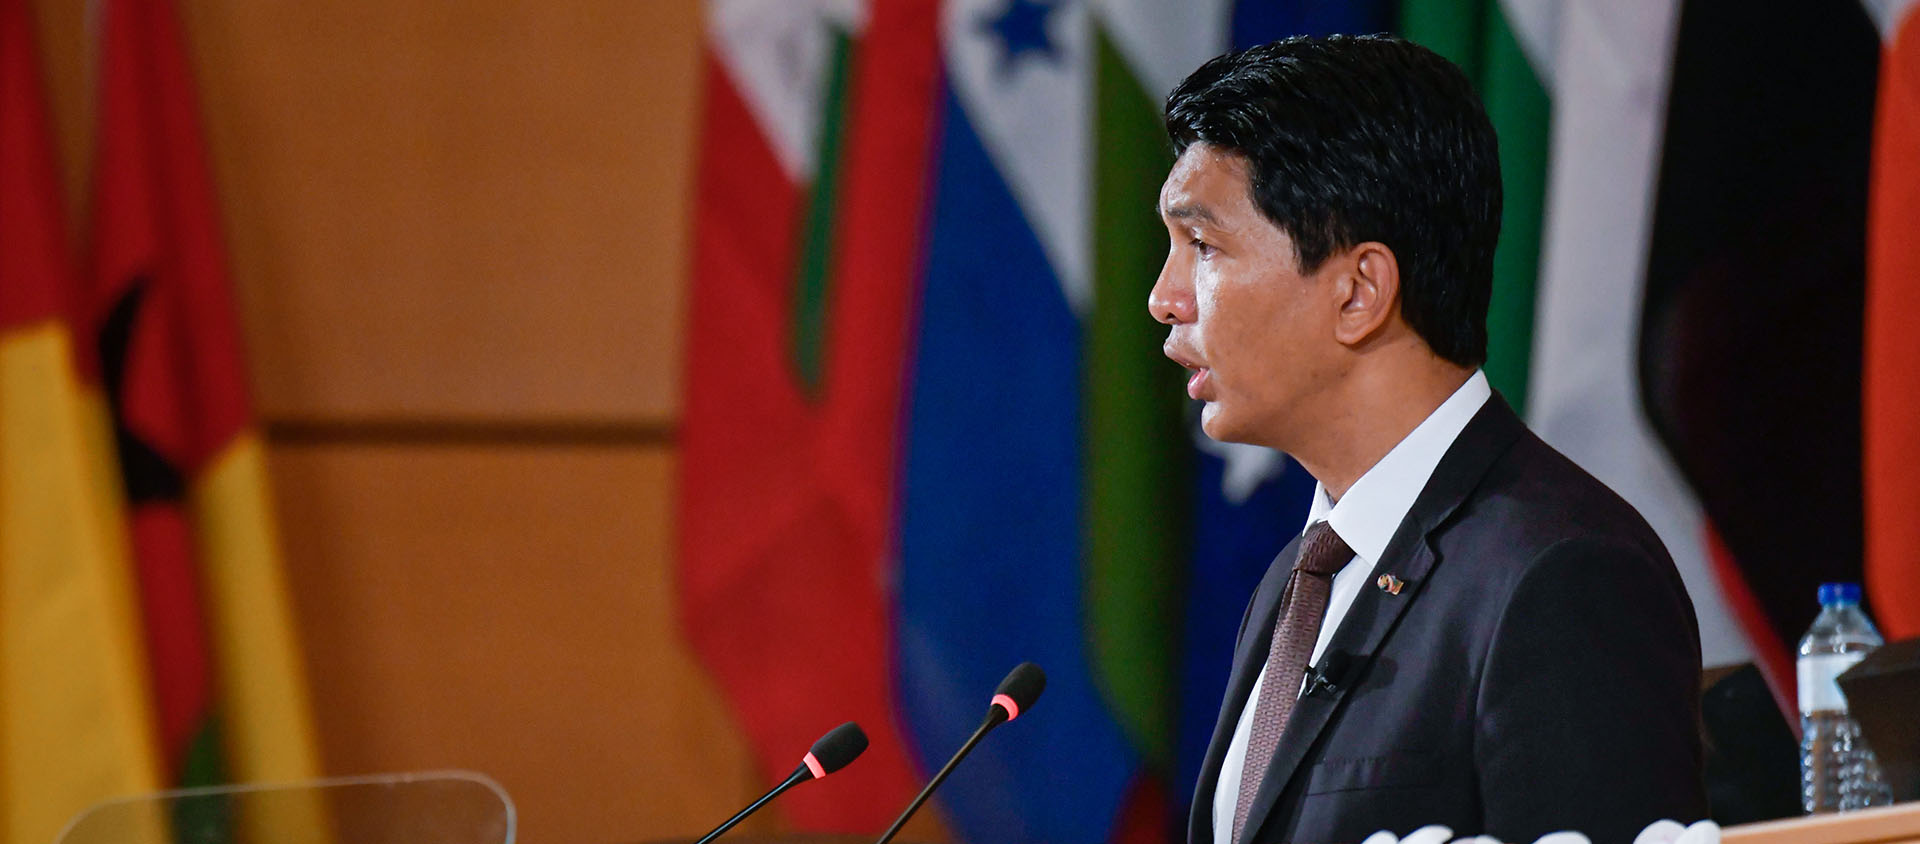 Le président malgache Andry Rajoelina, ici en juin 2019, a reçu les évêques catholiques | © Flickr/Crozet/Pouteau/International Labour Conference/CC BY-NC-ND 2.0